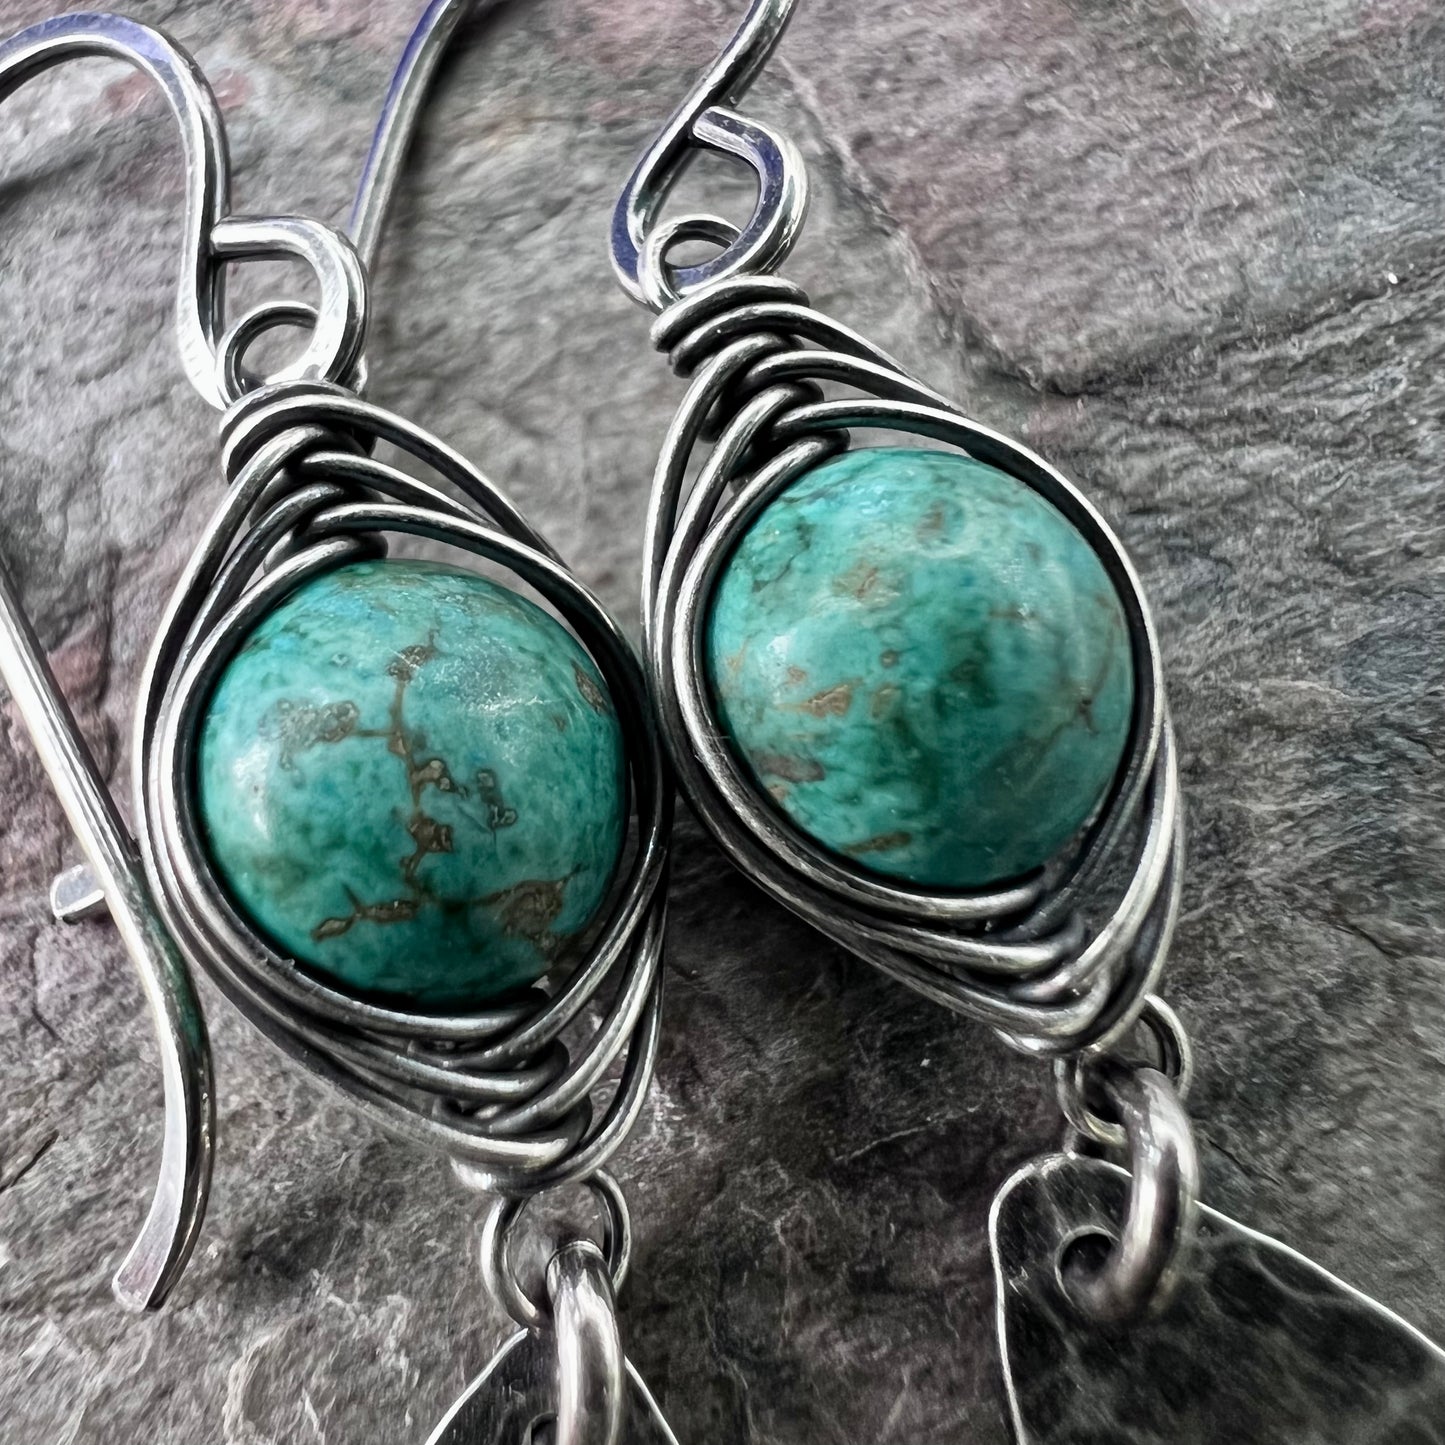 Turquoise Sterling Silver Earrings - Wire-wrapped Turquoise and Hammered Sterling Silver Teardrops Earrings